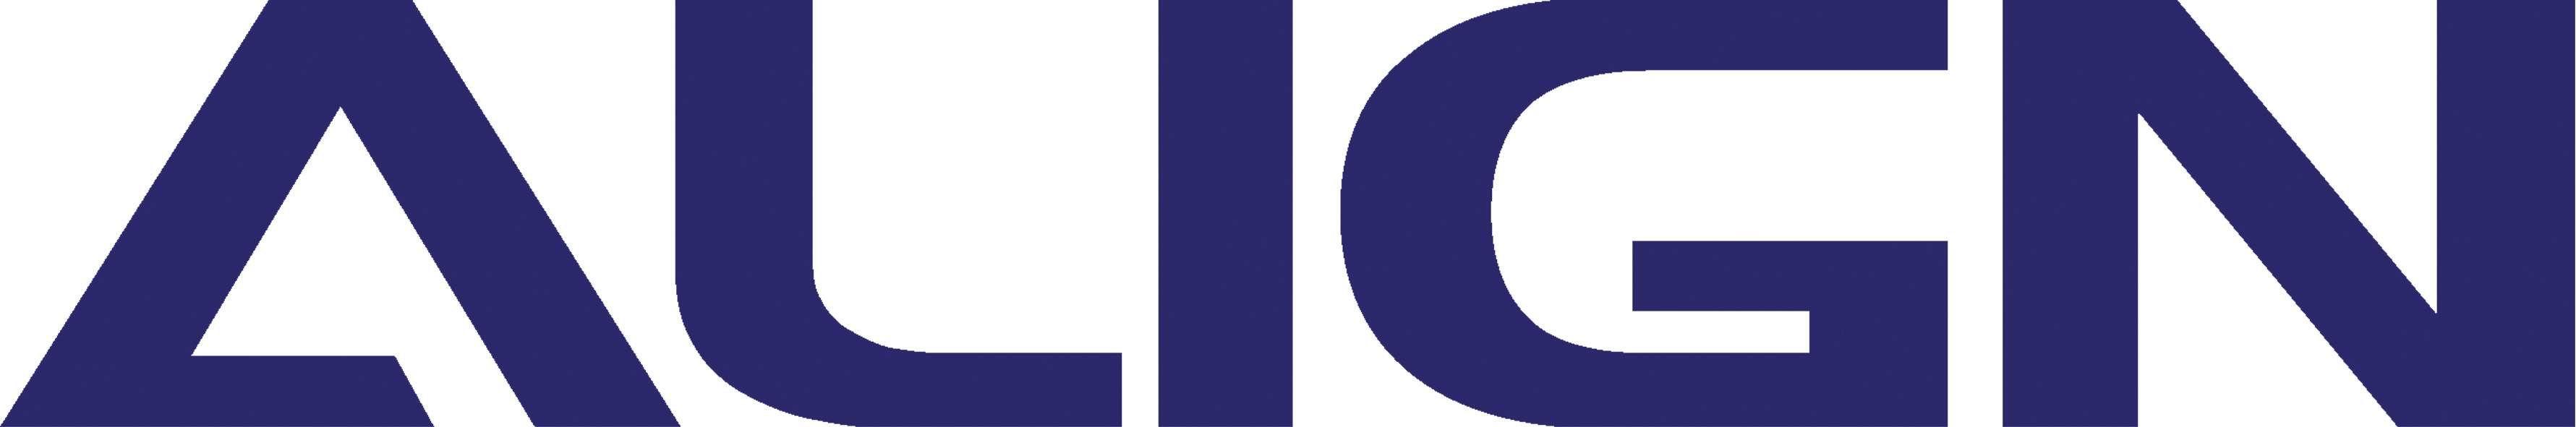 Align Logo - File:Align Logo.JPG - Wikimedia Commons